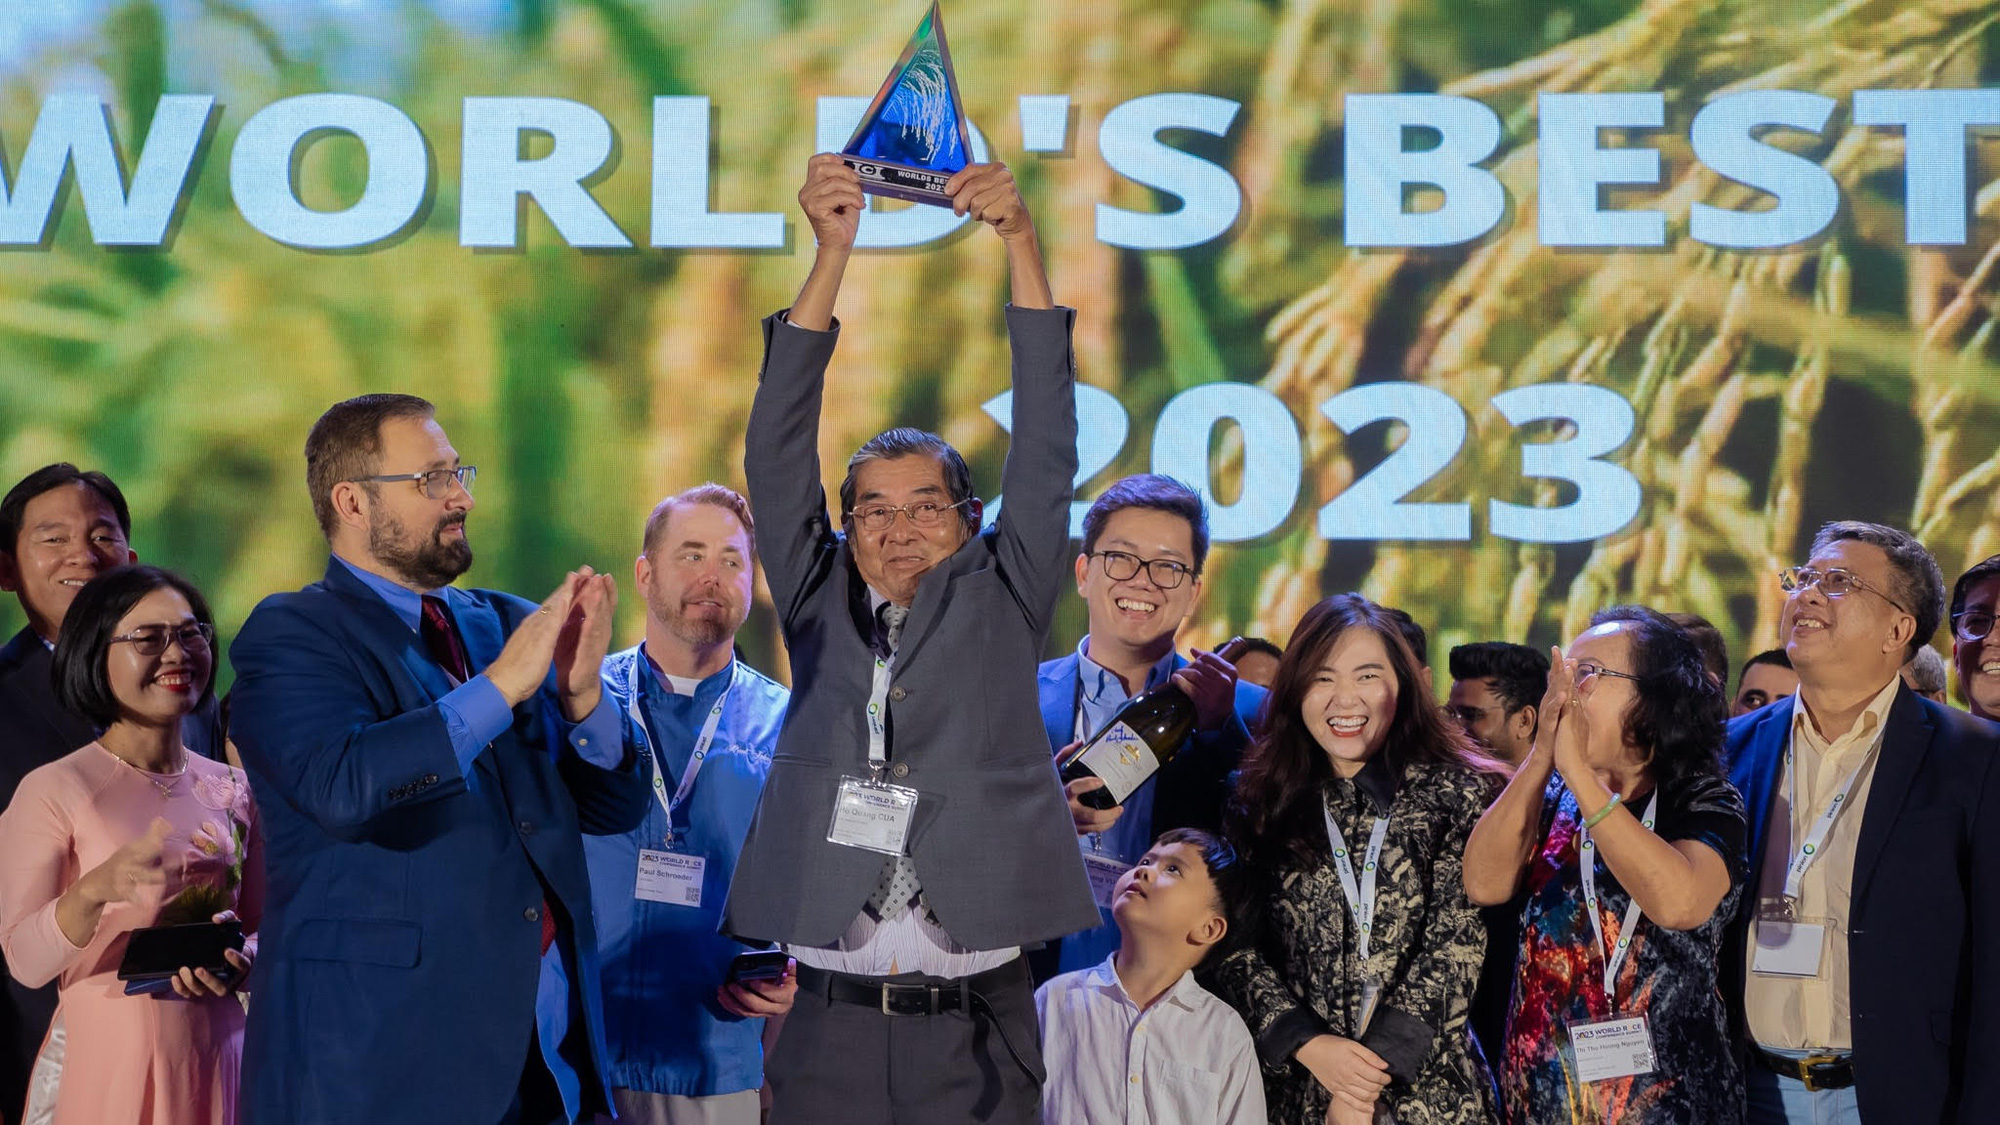 Sau 4 ngày im lặng, Ban tổ chức công bố gạo ST25 đoạt giải ngon nhất thế giới - Ảnh 1.